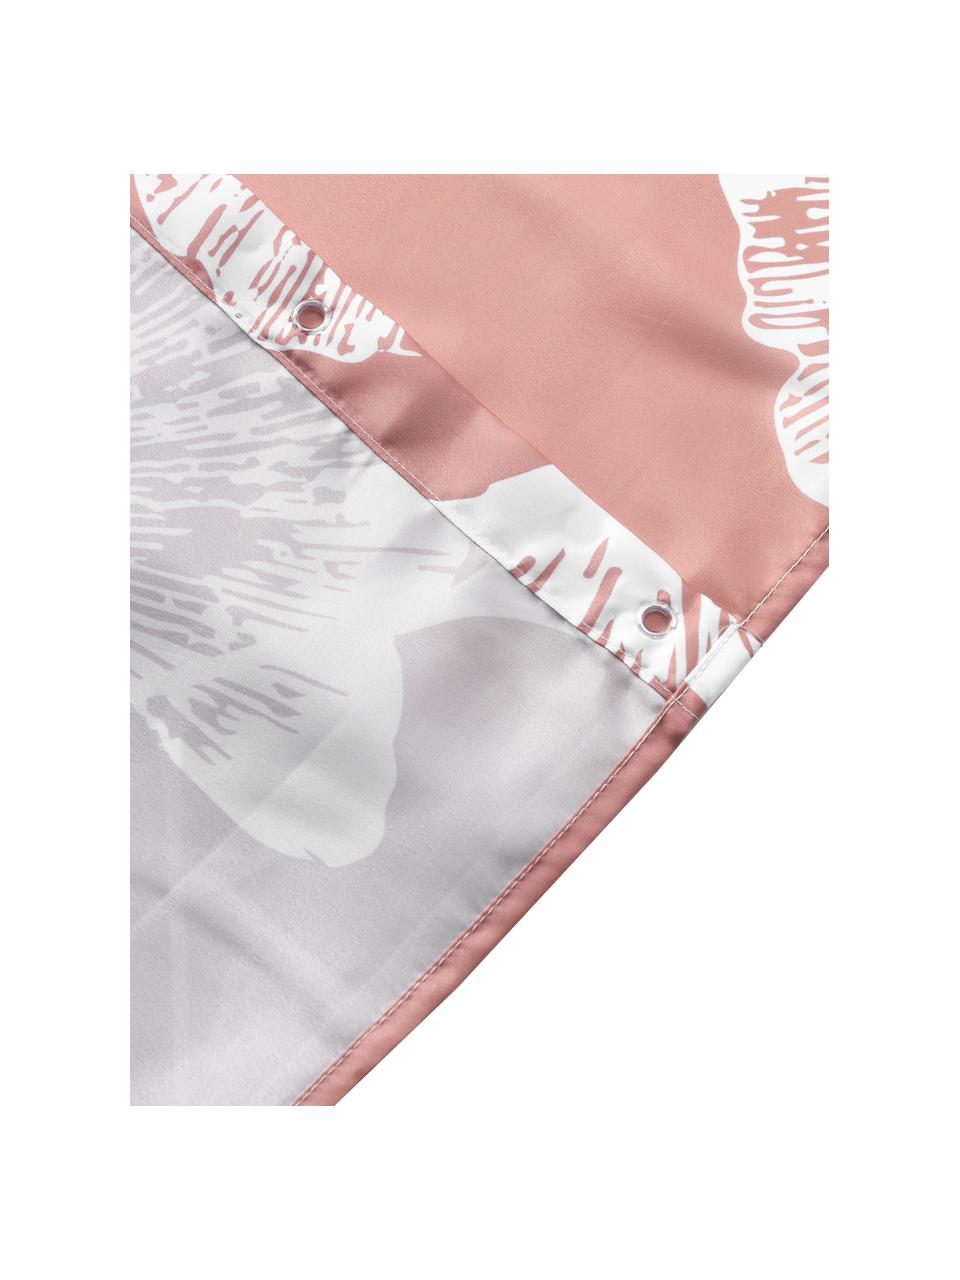 Rideau de douche ginkgo rose Mare, 100 % polyester, Rose foncé, blanc, larg. 180 x long. 200 cm